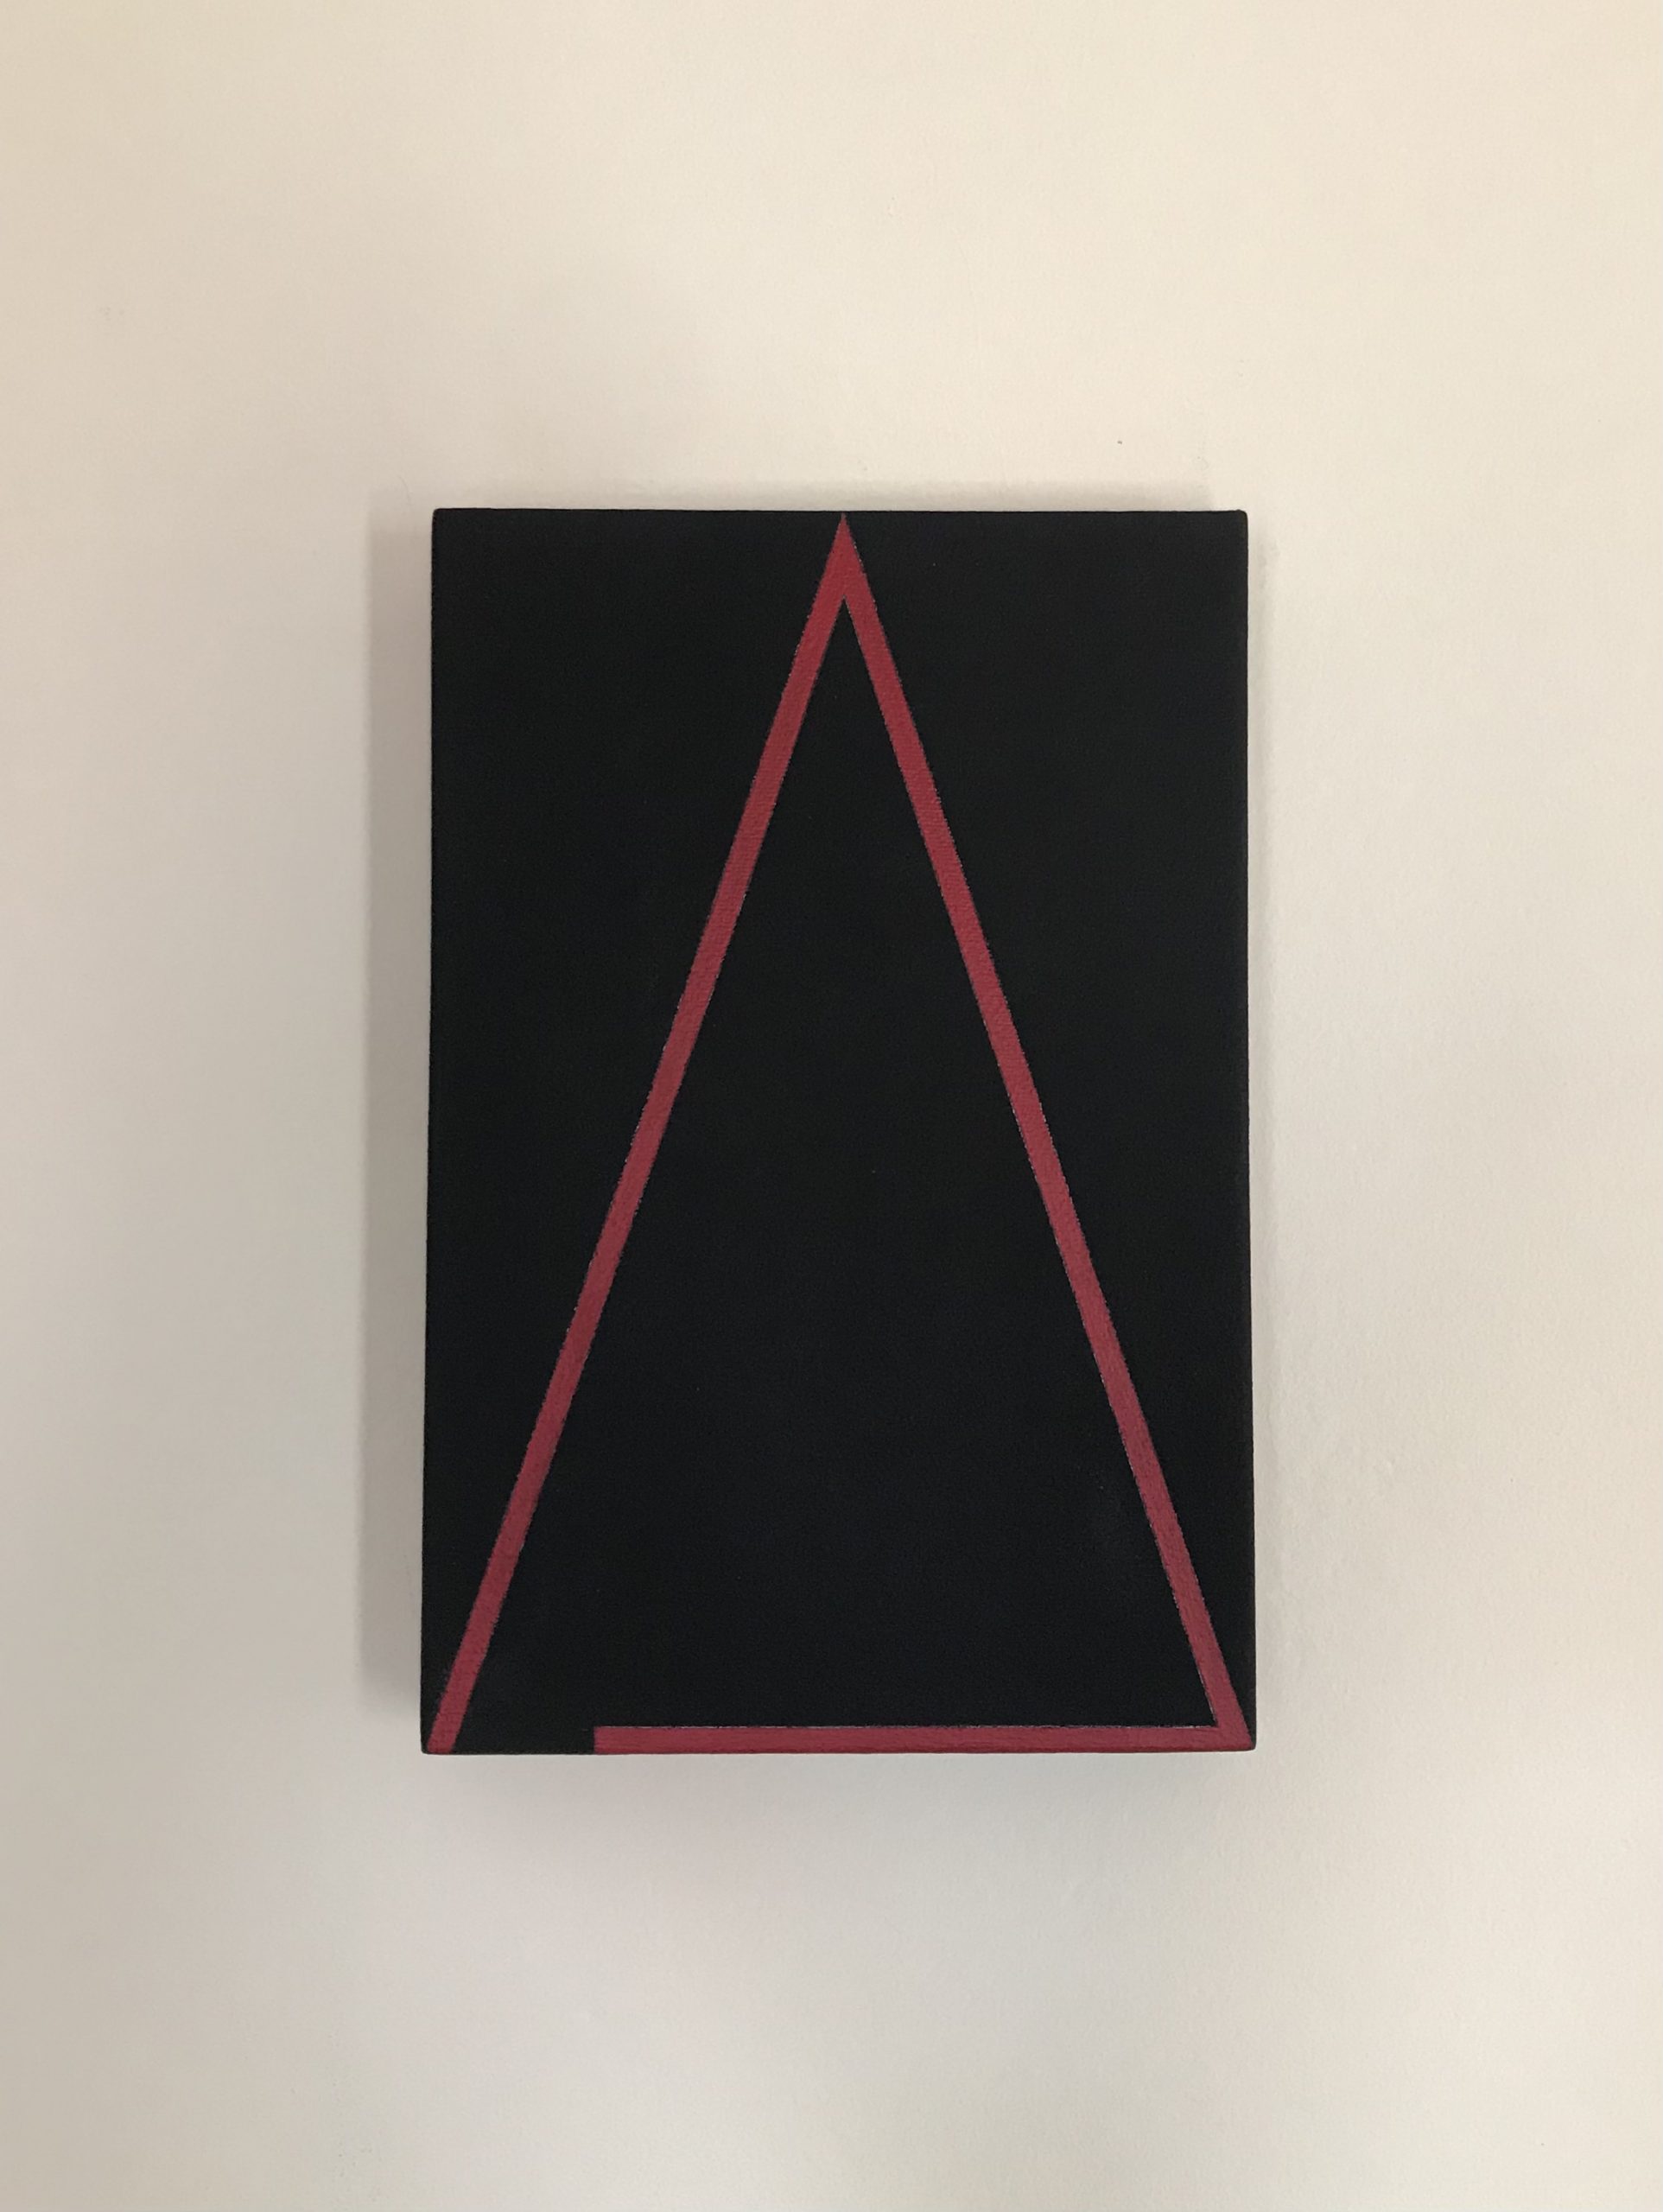 Marina Caverzan, Opticks (série Matemática Esotérica), 2021, Acrílica sobre tela, 30 x 20 cm